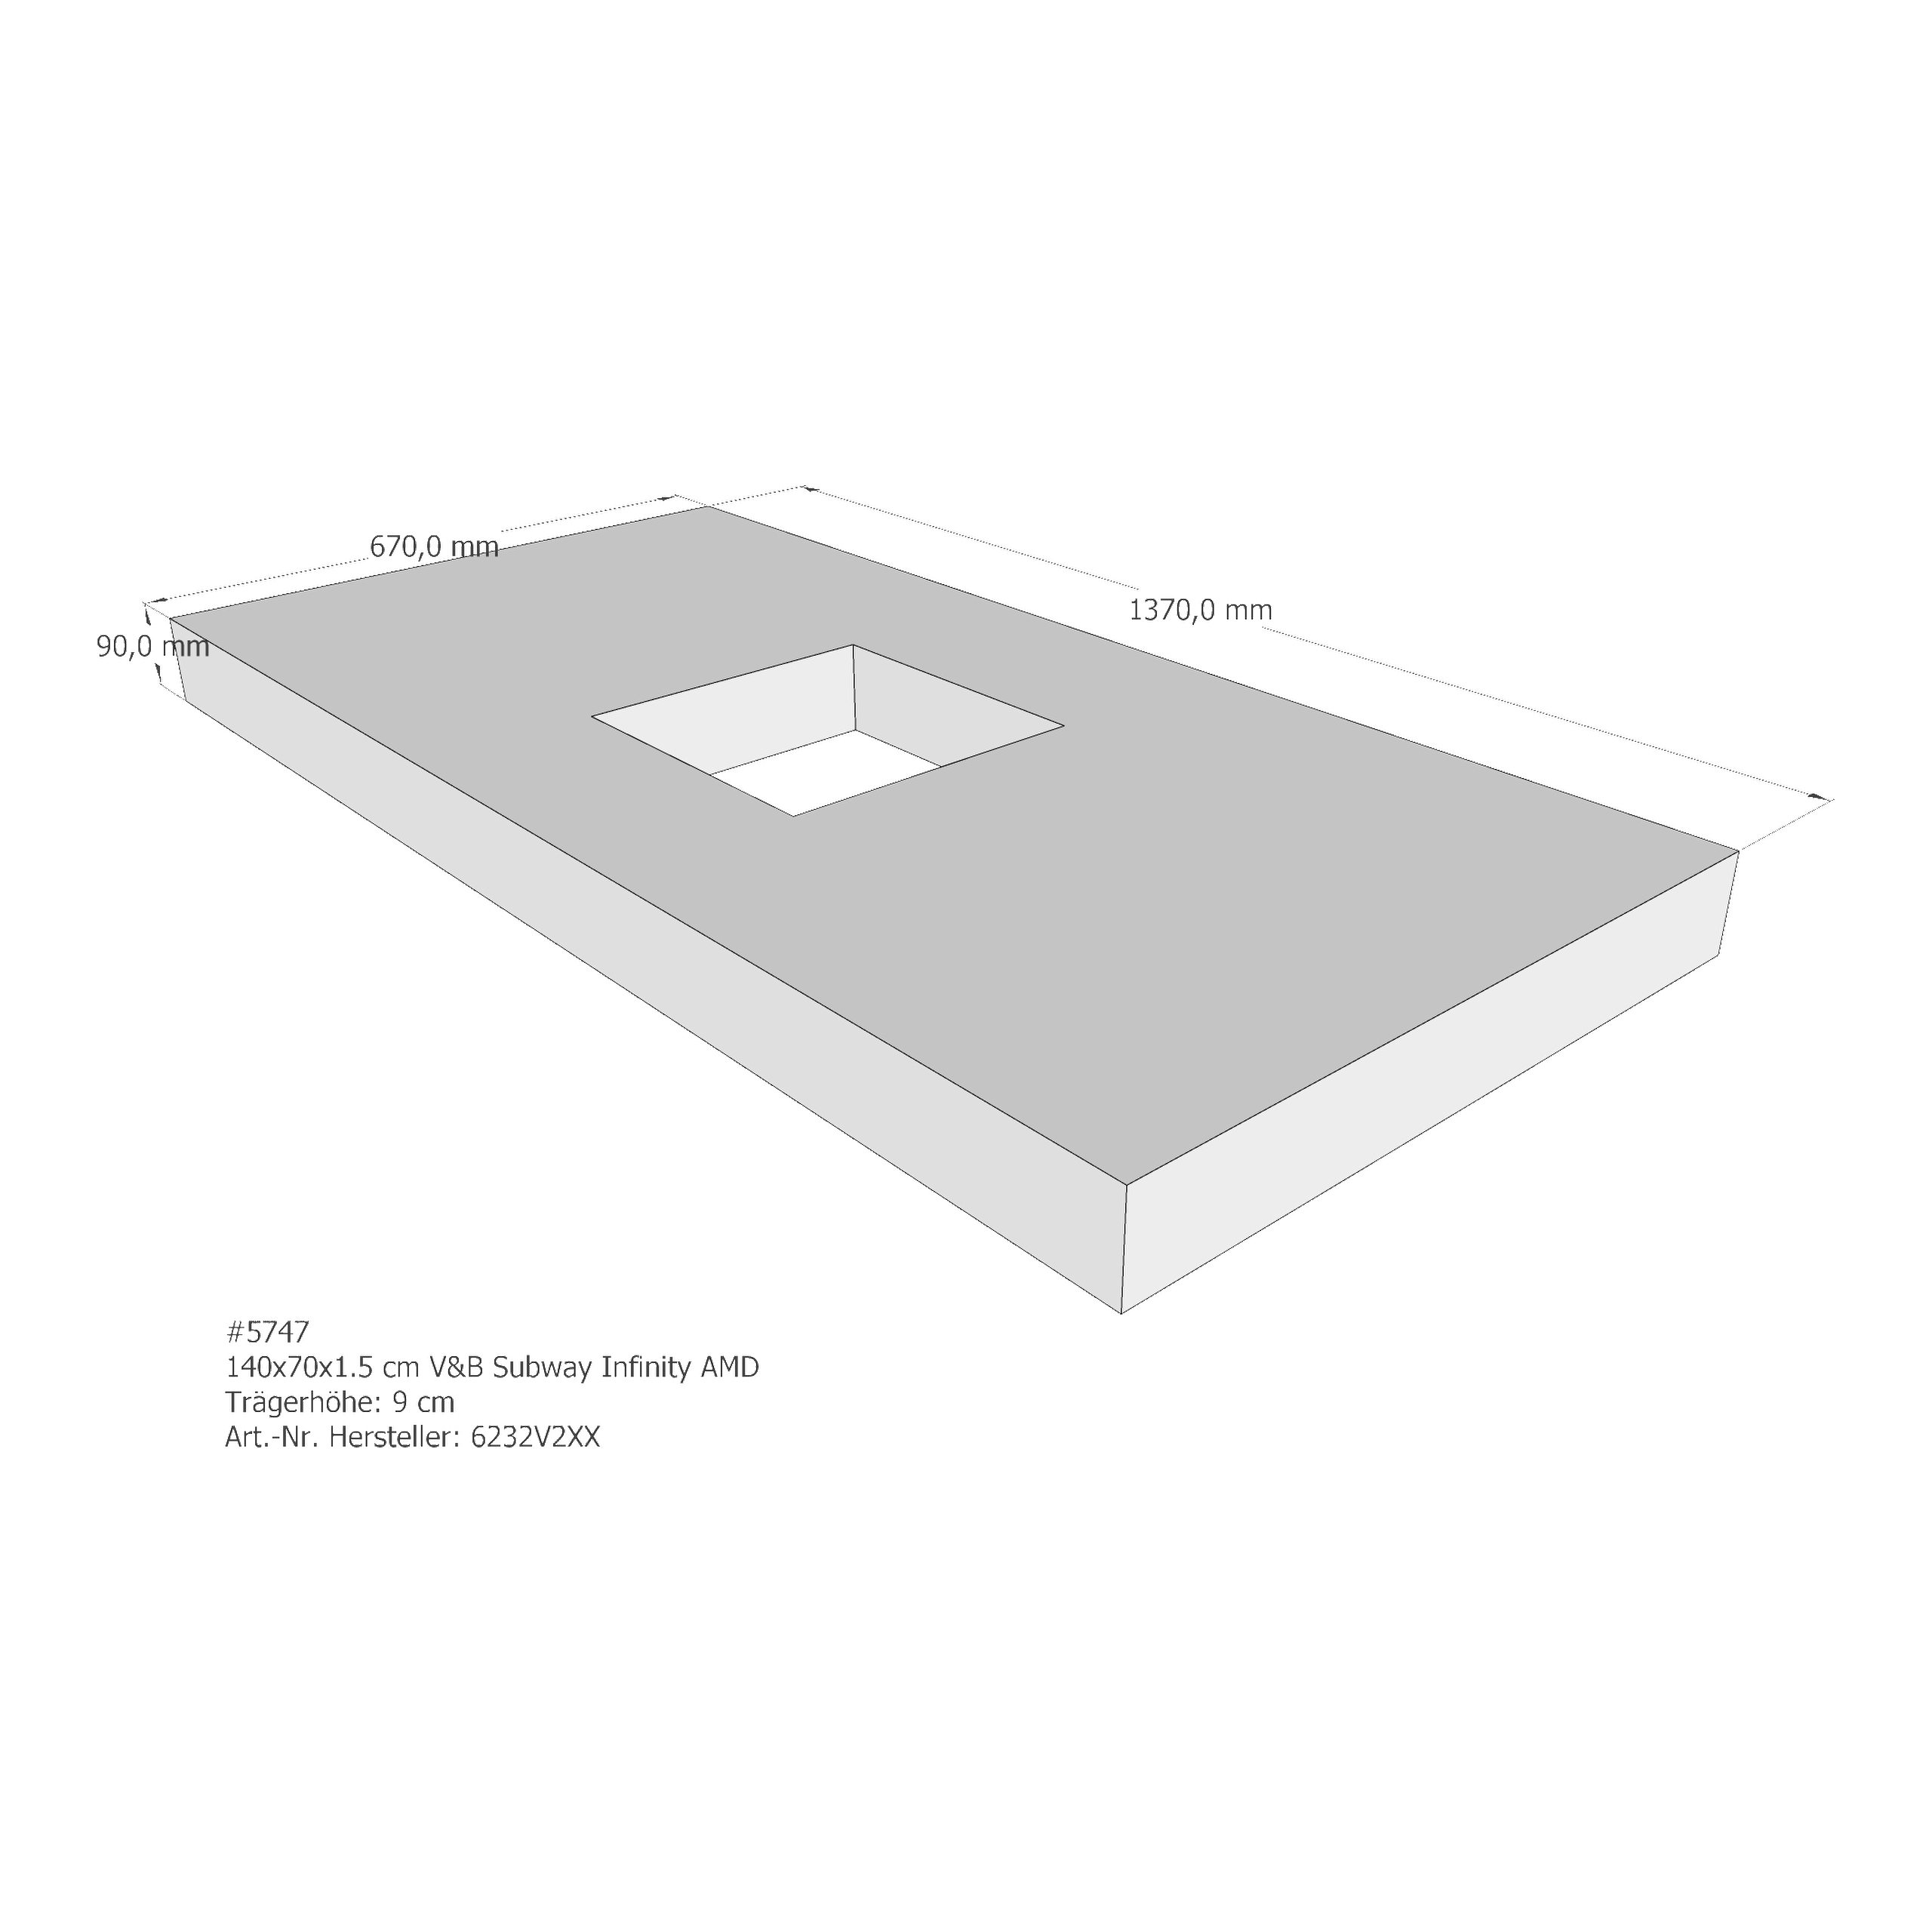 Duschwannenträger für Villeroy & Boch Subway Infinity 140 × 70 × 1,5 cm